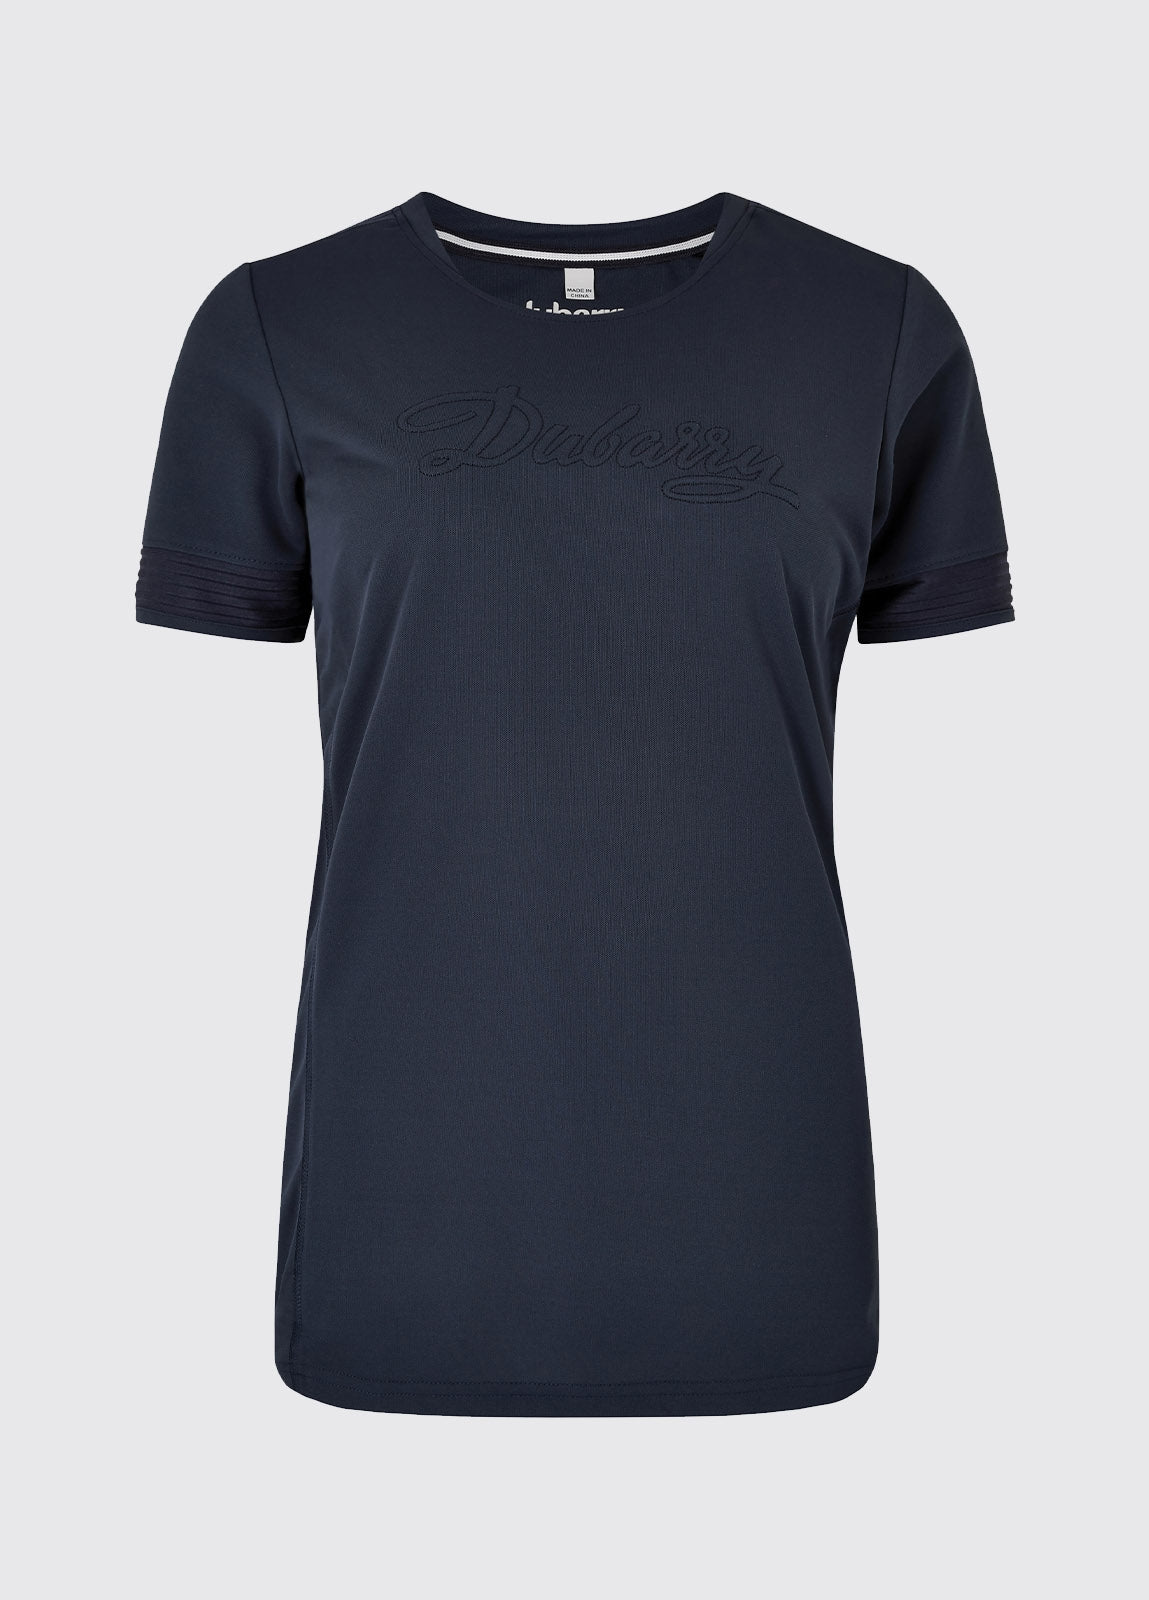 Dubarry Trim T-shirt, Navy